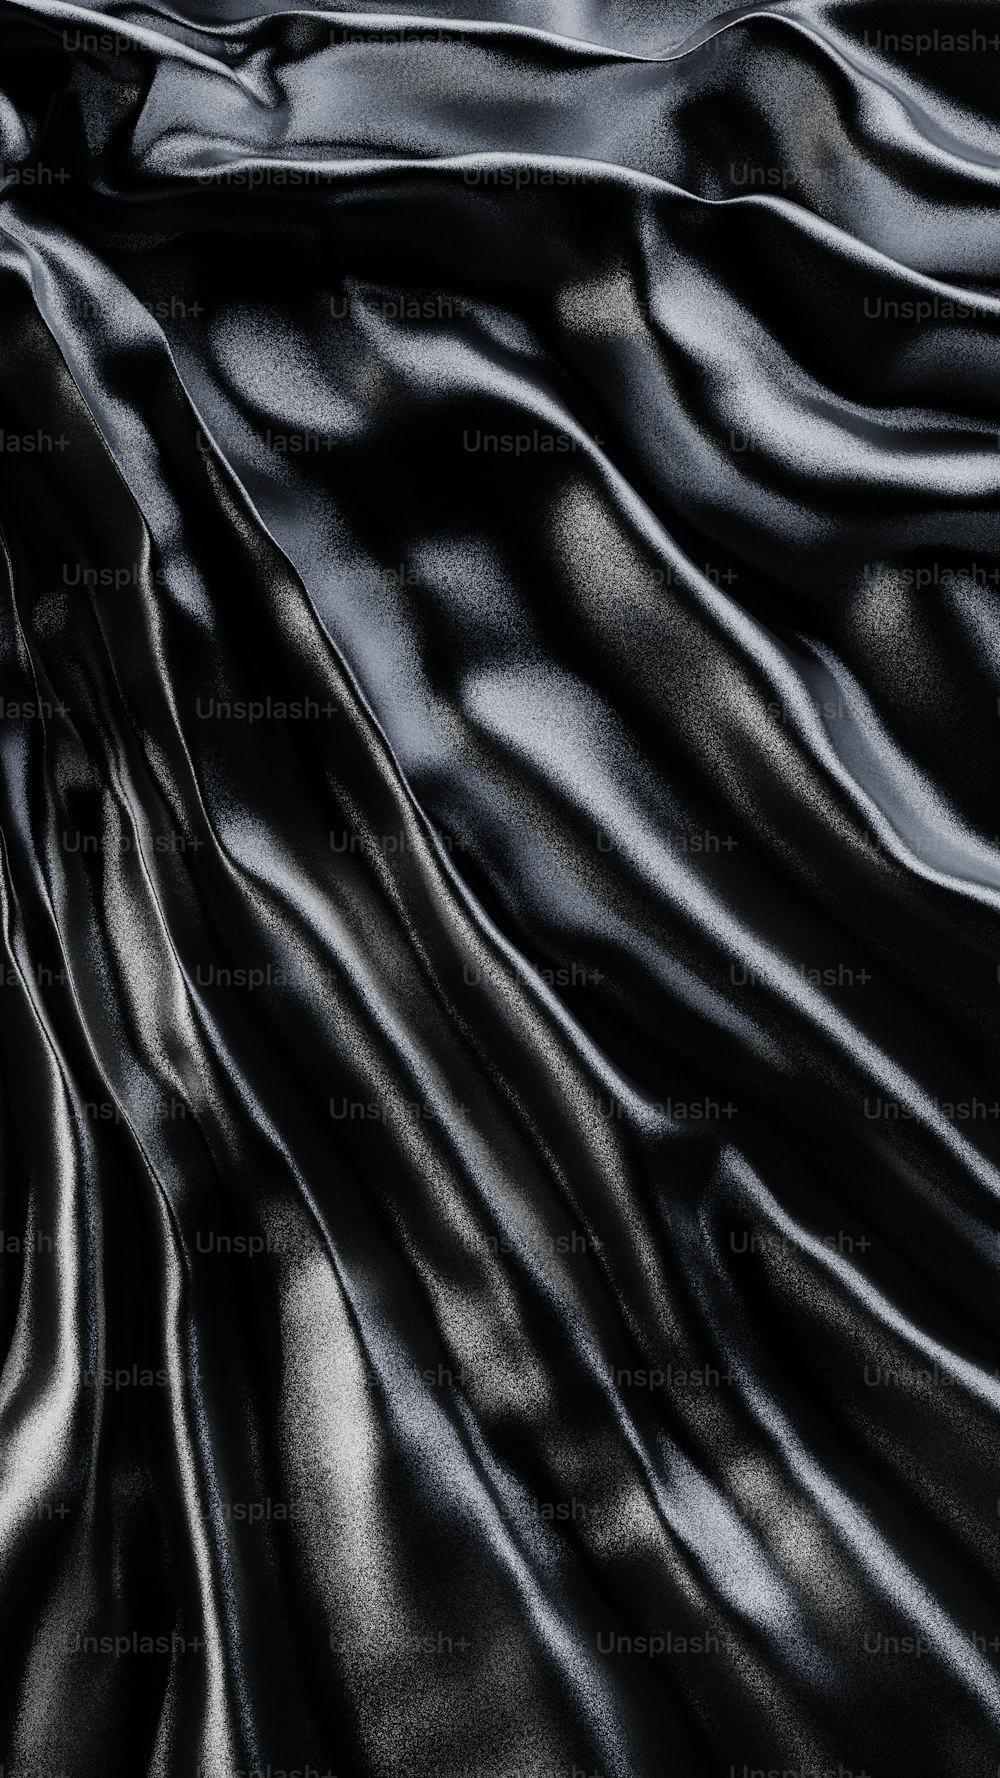 Un tissu de soie noire avec une finition très lisse